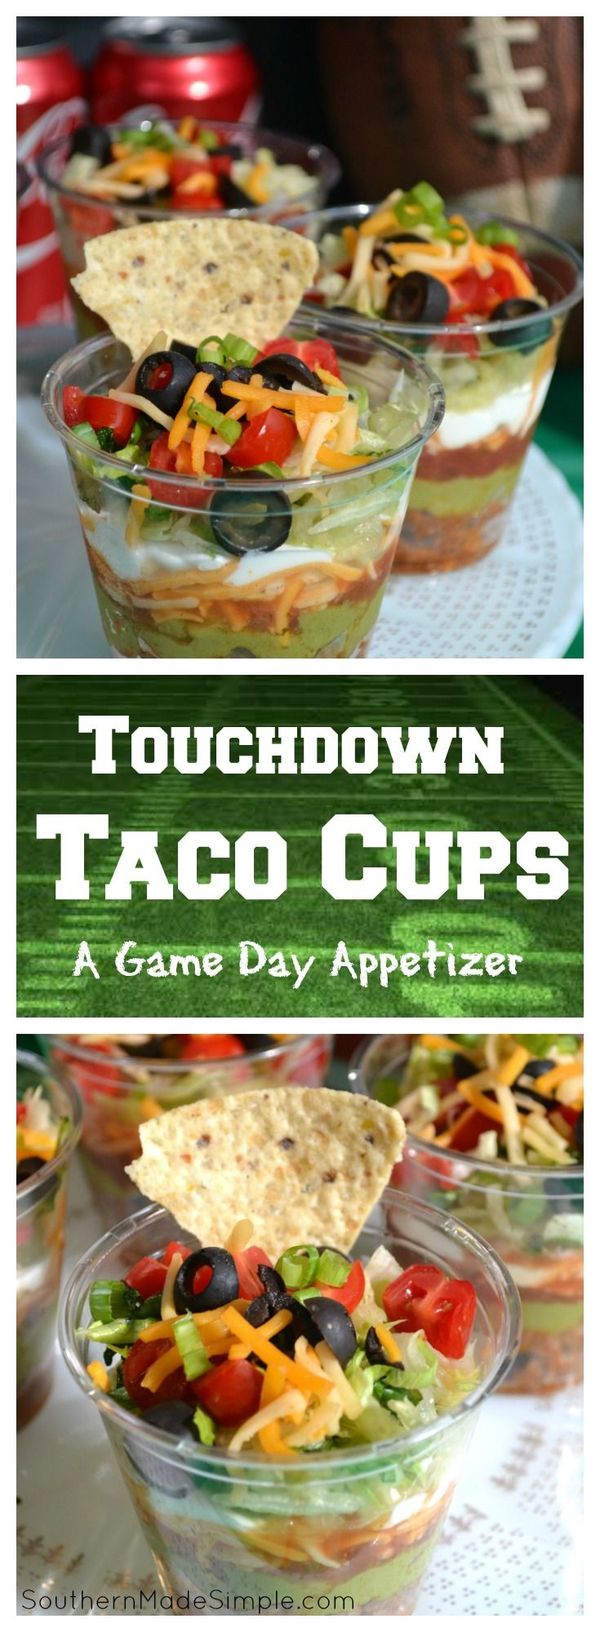 Touchdown Taco Cups